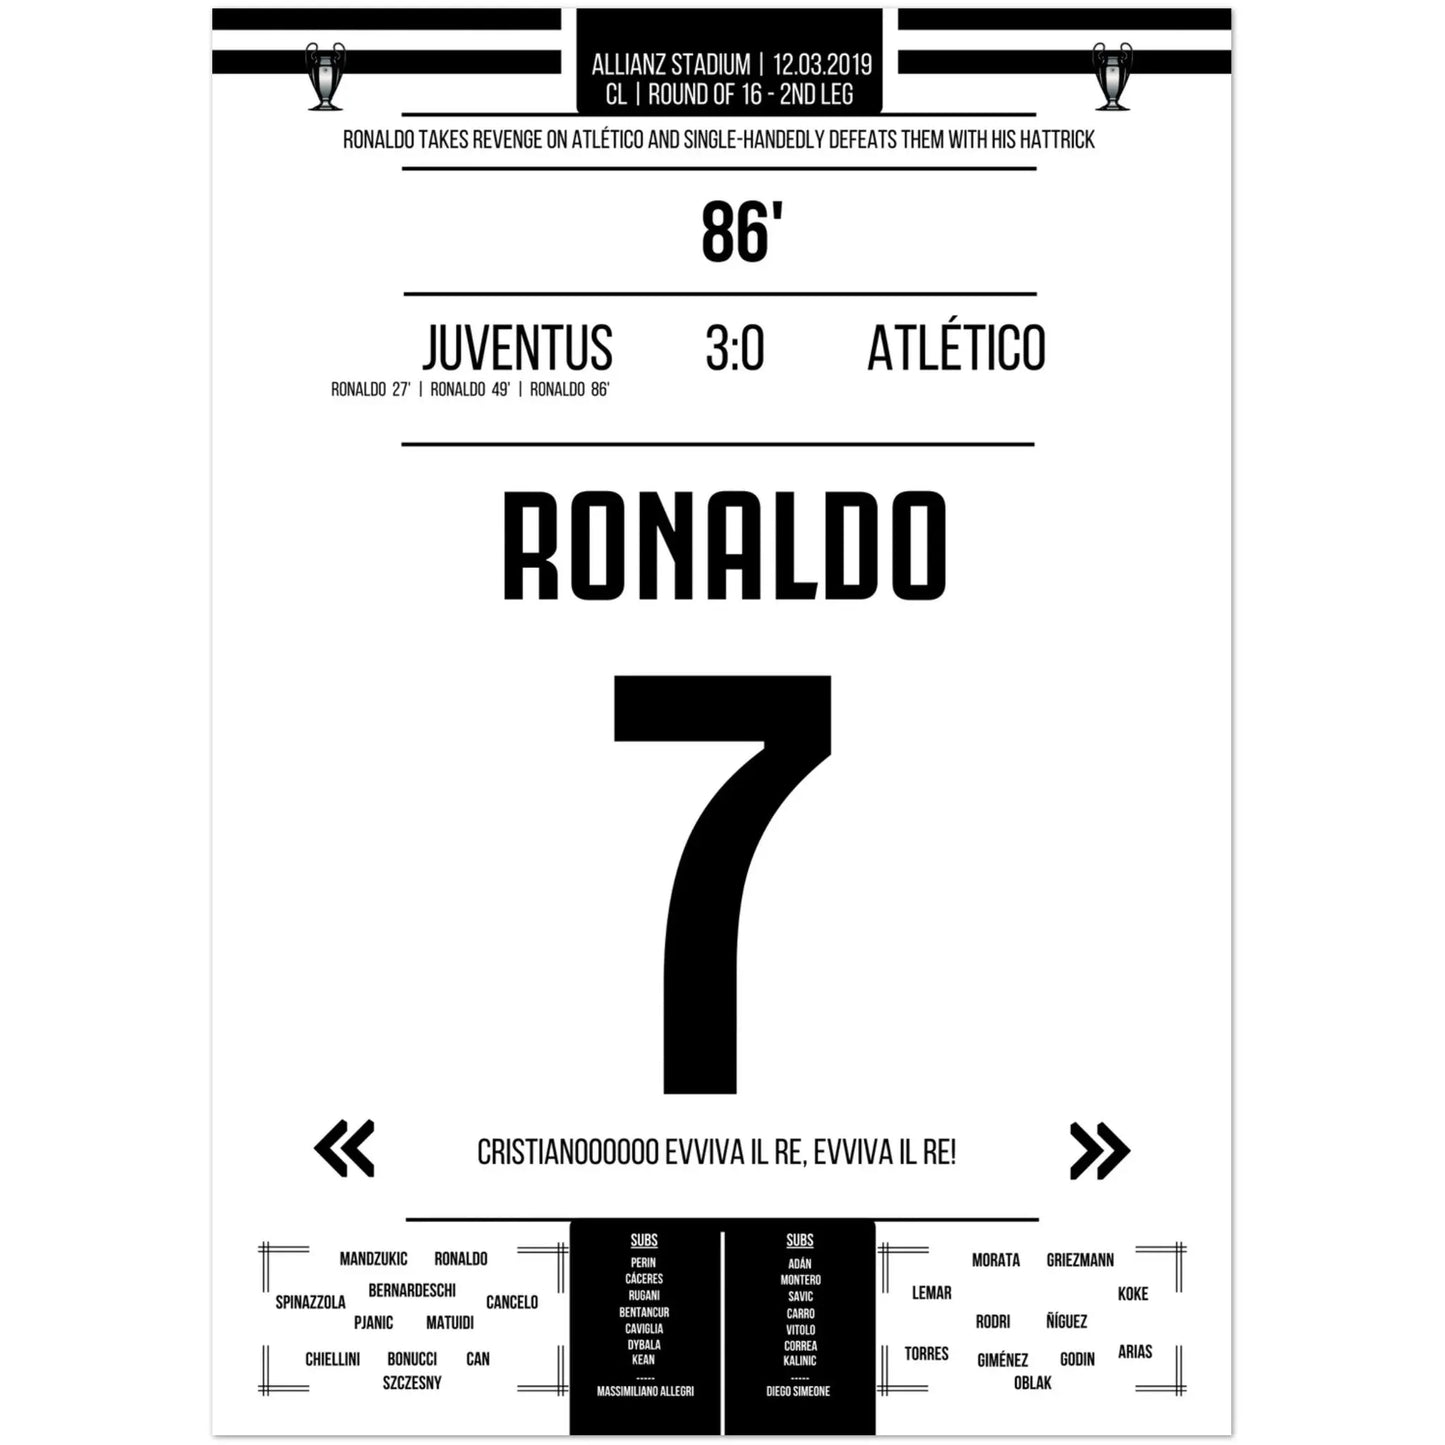 Ronaldo's wraak tegen Atlético in de terugwedstrijd van de Champions League van 2019